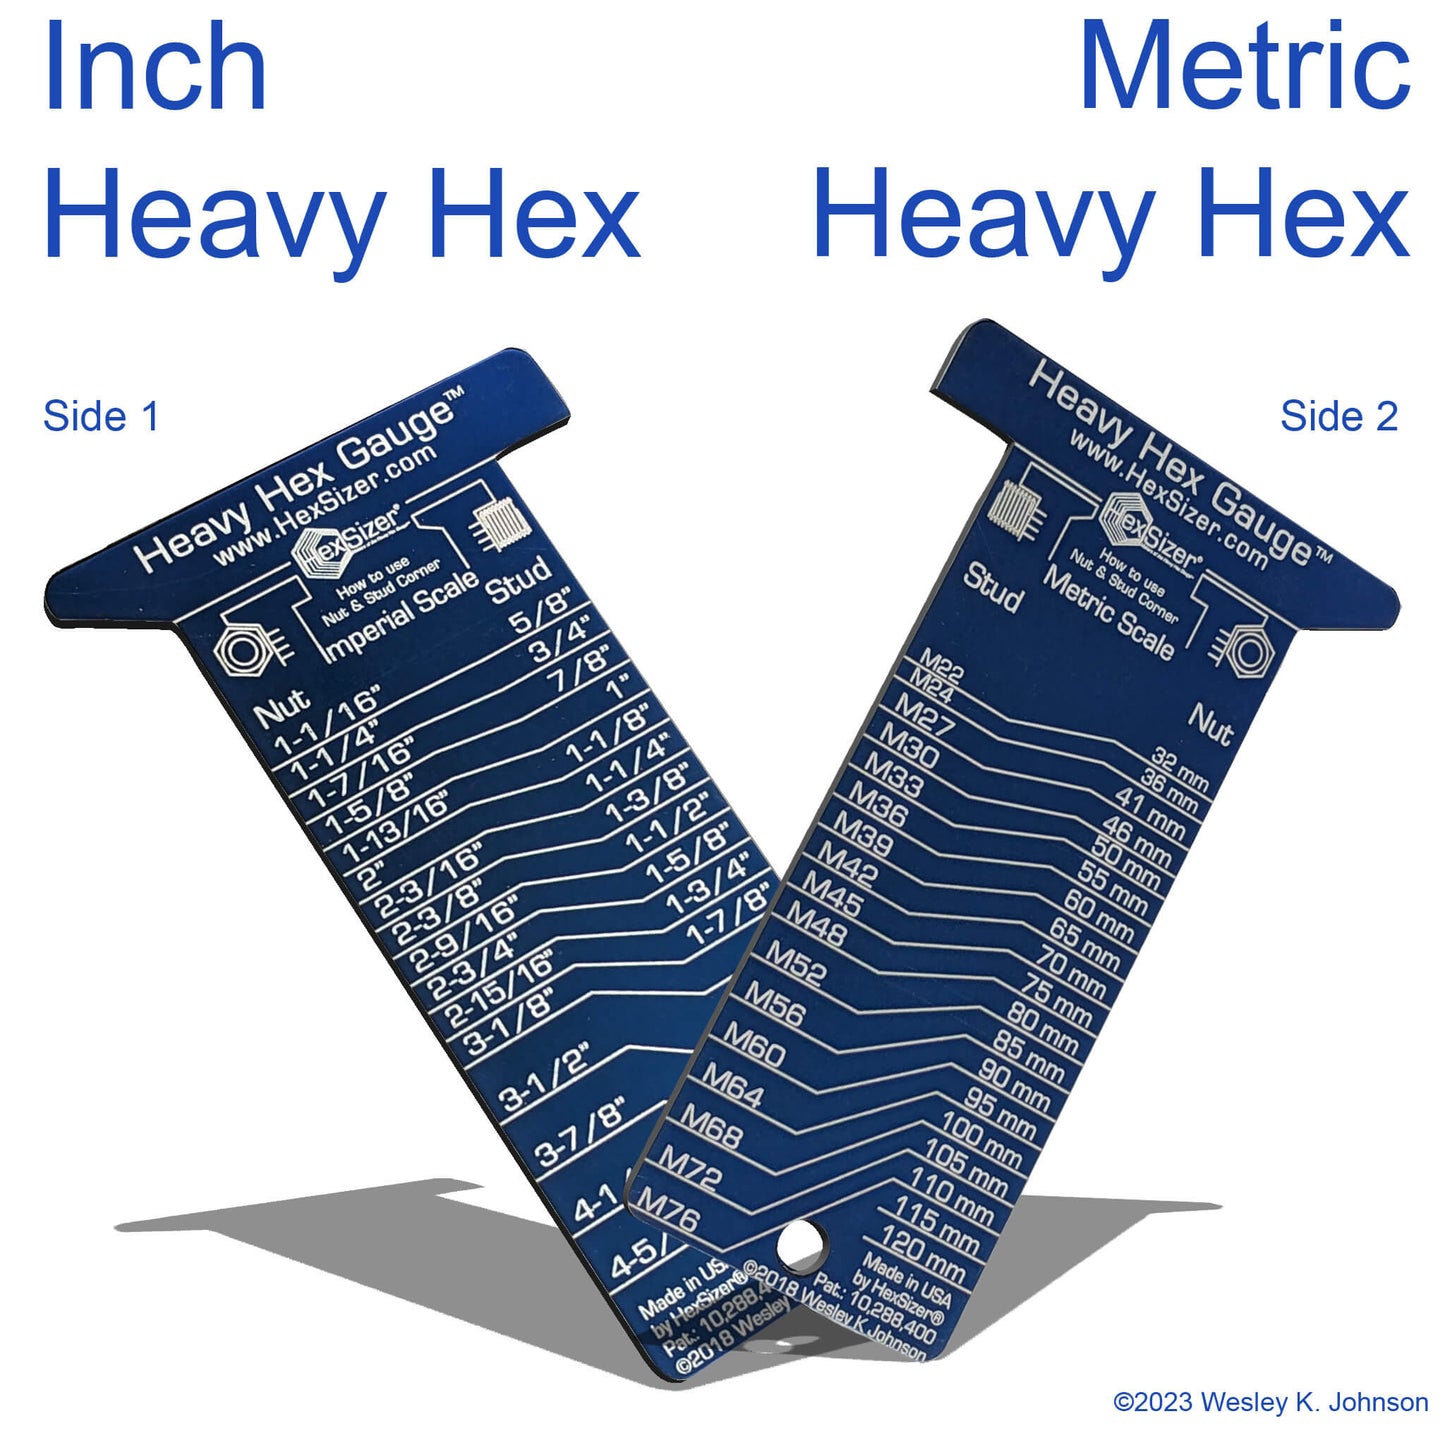 SIDE 1 - Heavy Hex Inch - SIDE 2 - Heavy Hex Metric